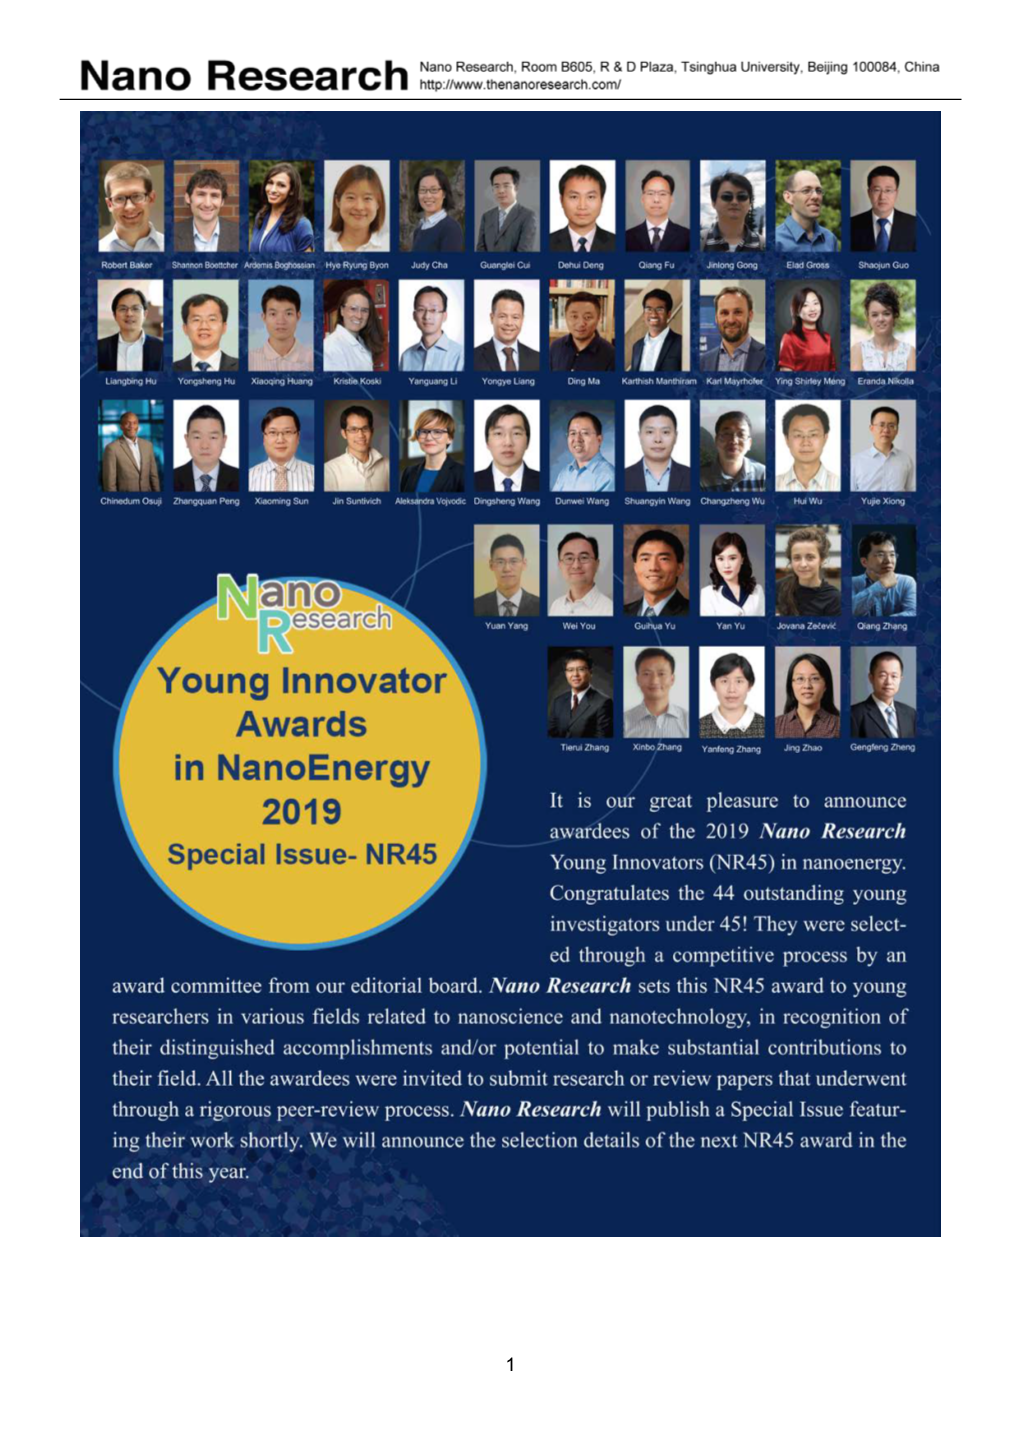 Young Innovator Awards in Nanoenergy, 2019